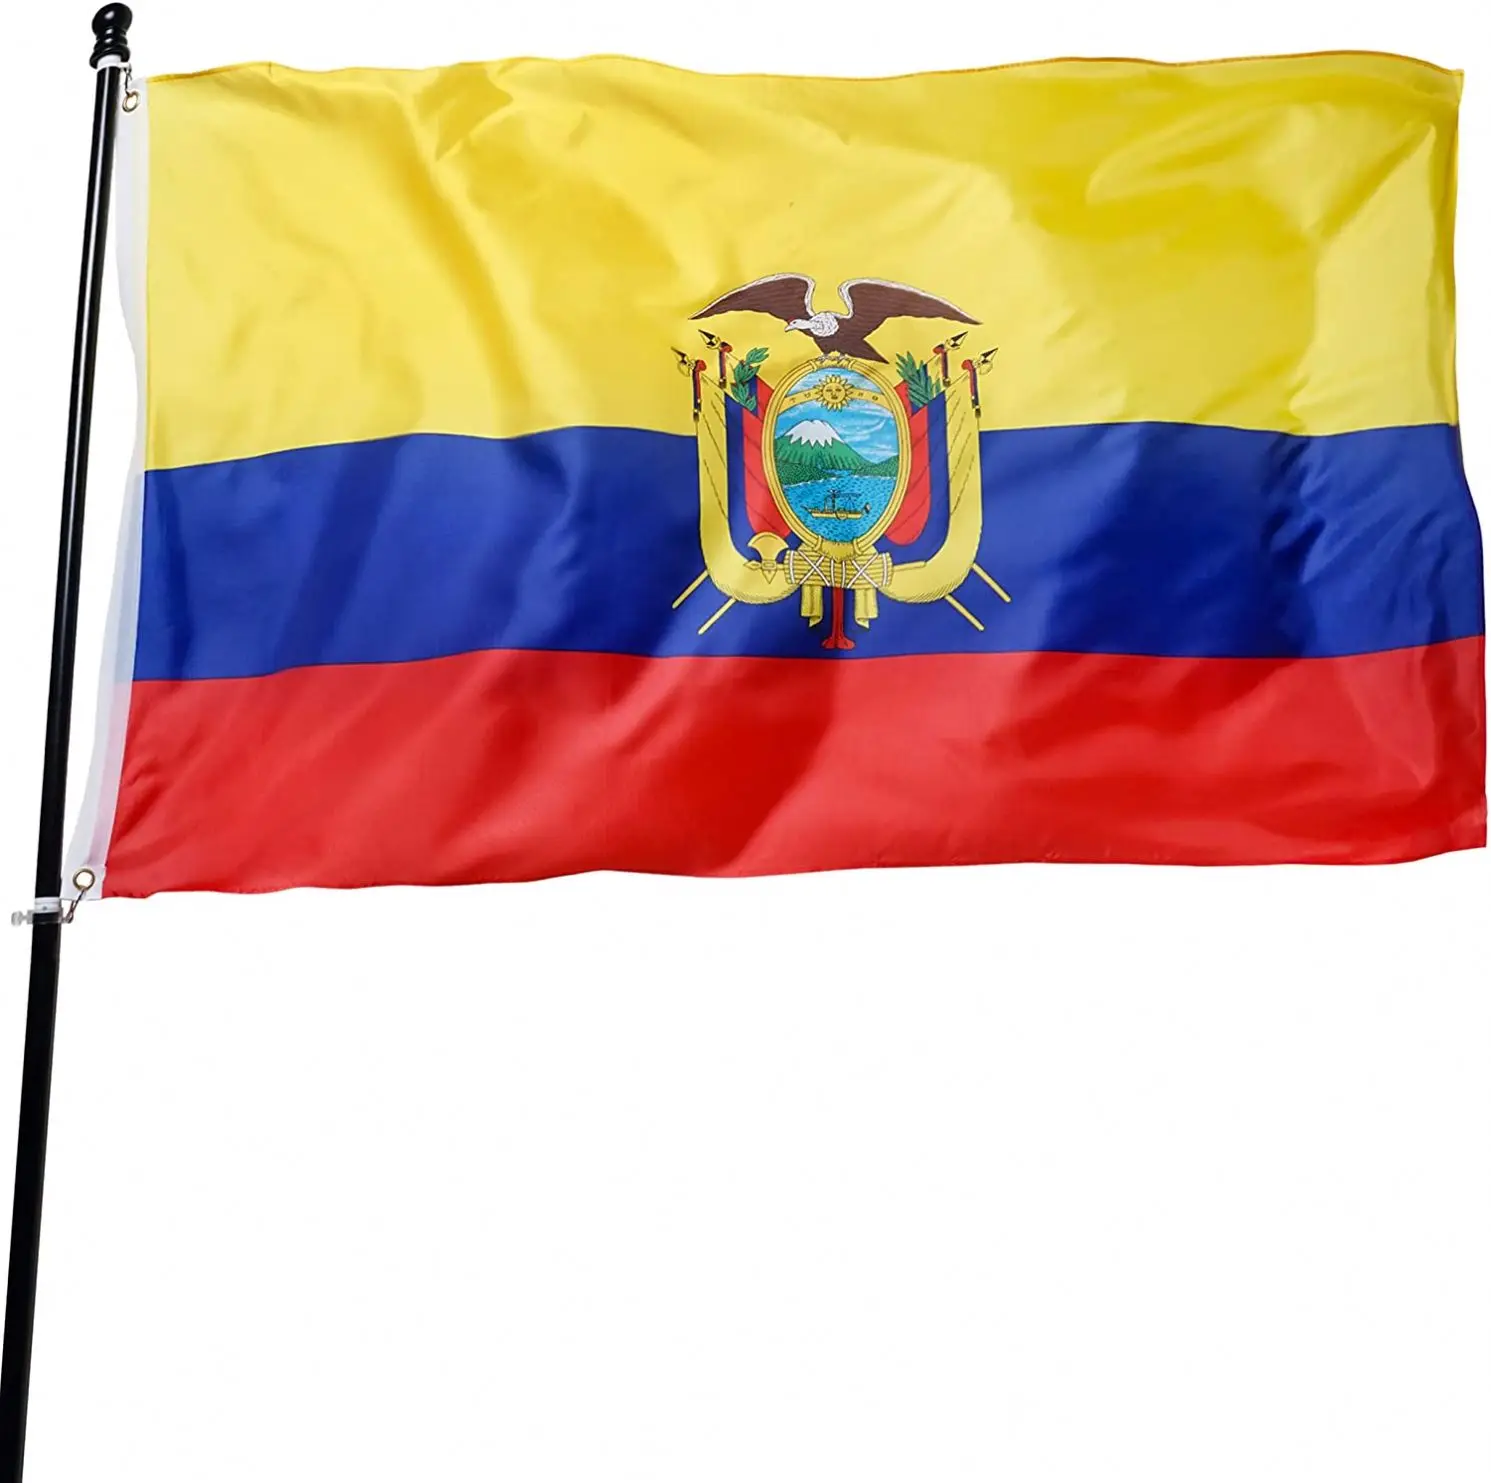 Cờ đỏ xanh mới nhất của Ecuador đang là món hàng hot tại đất nước Nam Mỹ này. Với thiết kế mới lạ và màu sắc rực rỡ, chiếc cờ này thật sự gây ấn tượng mạnh với bất cứ ai nhìn thấy.